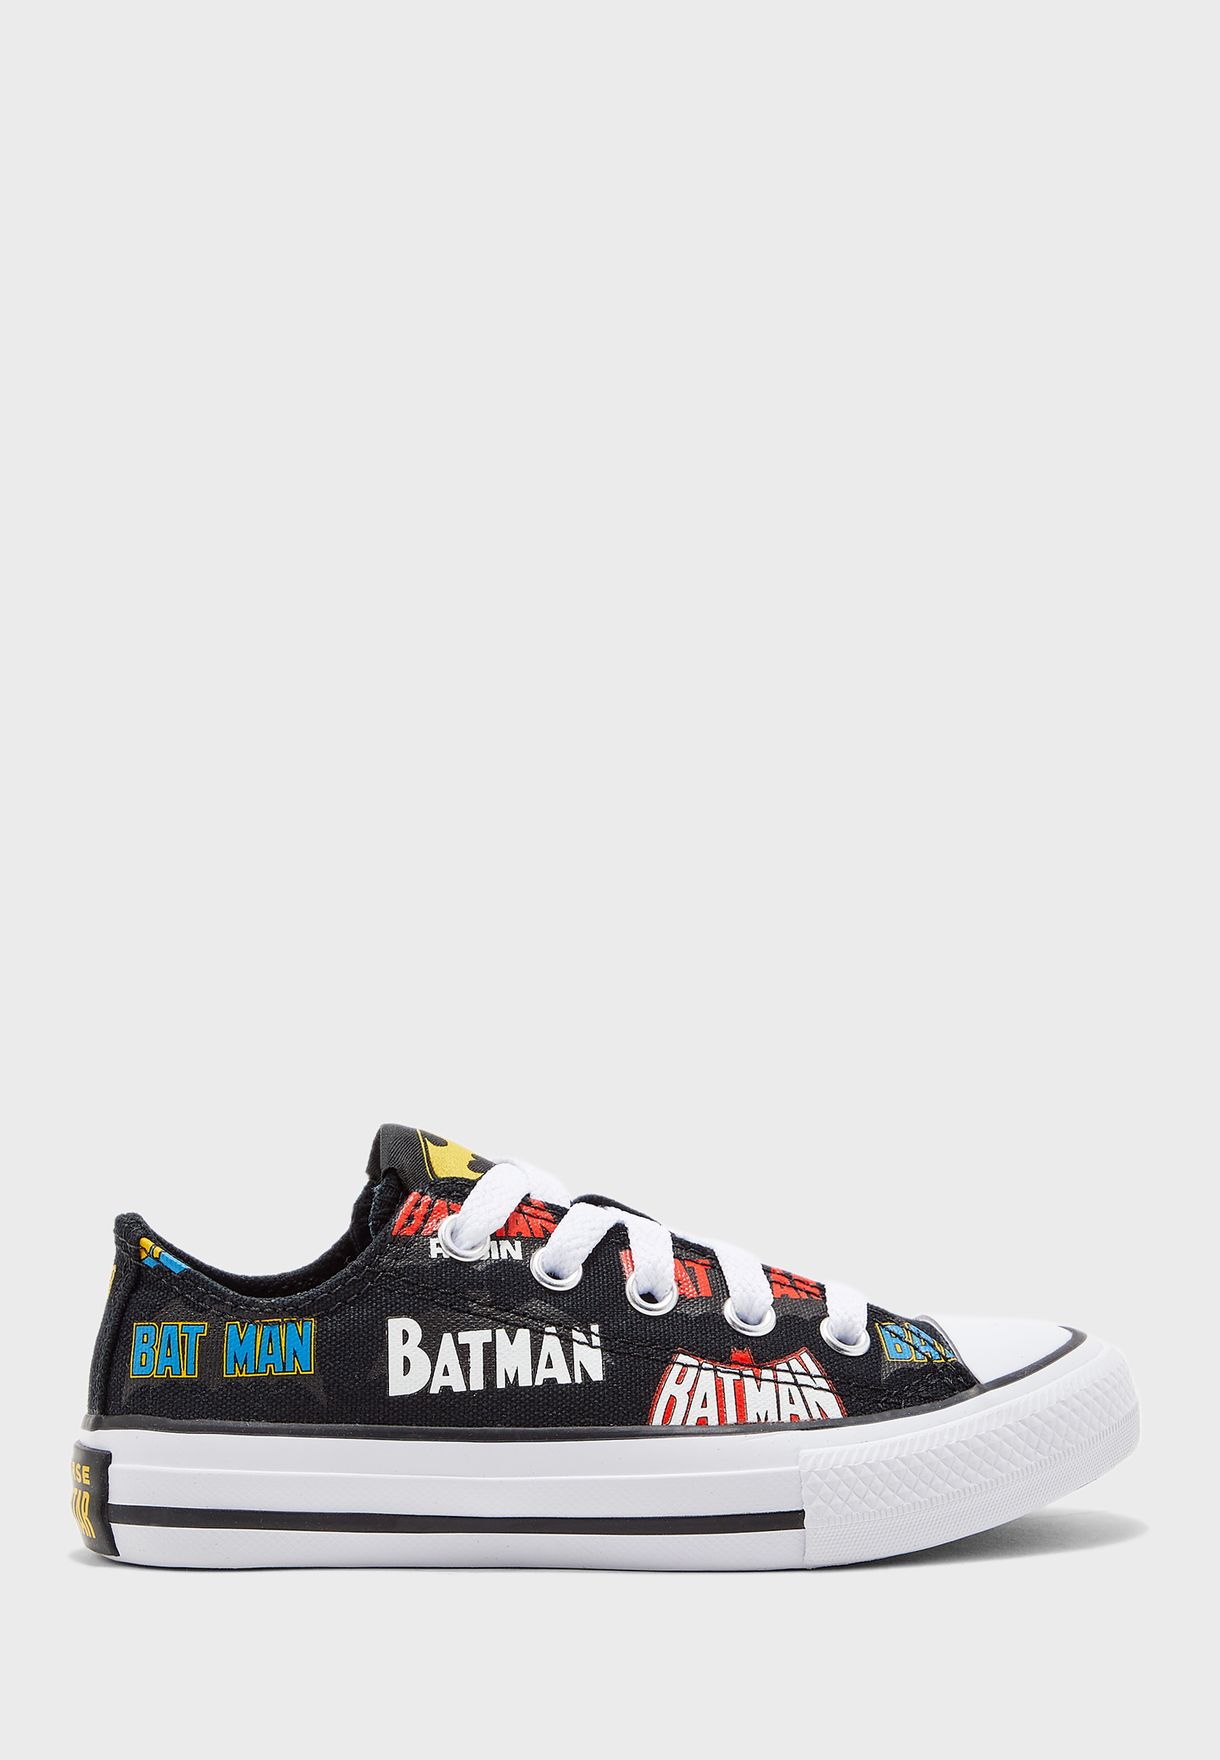 batman converse shoes for kids